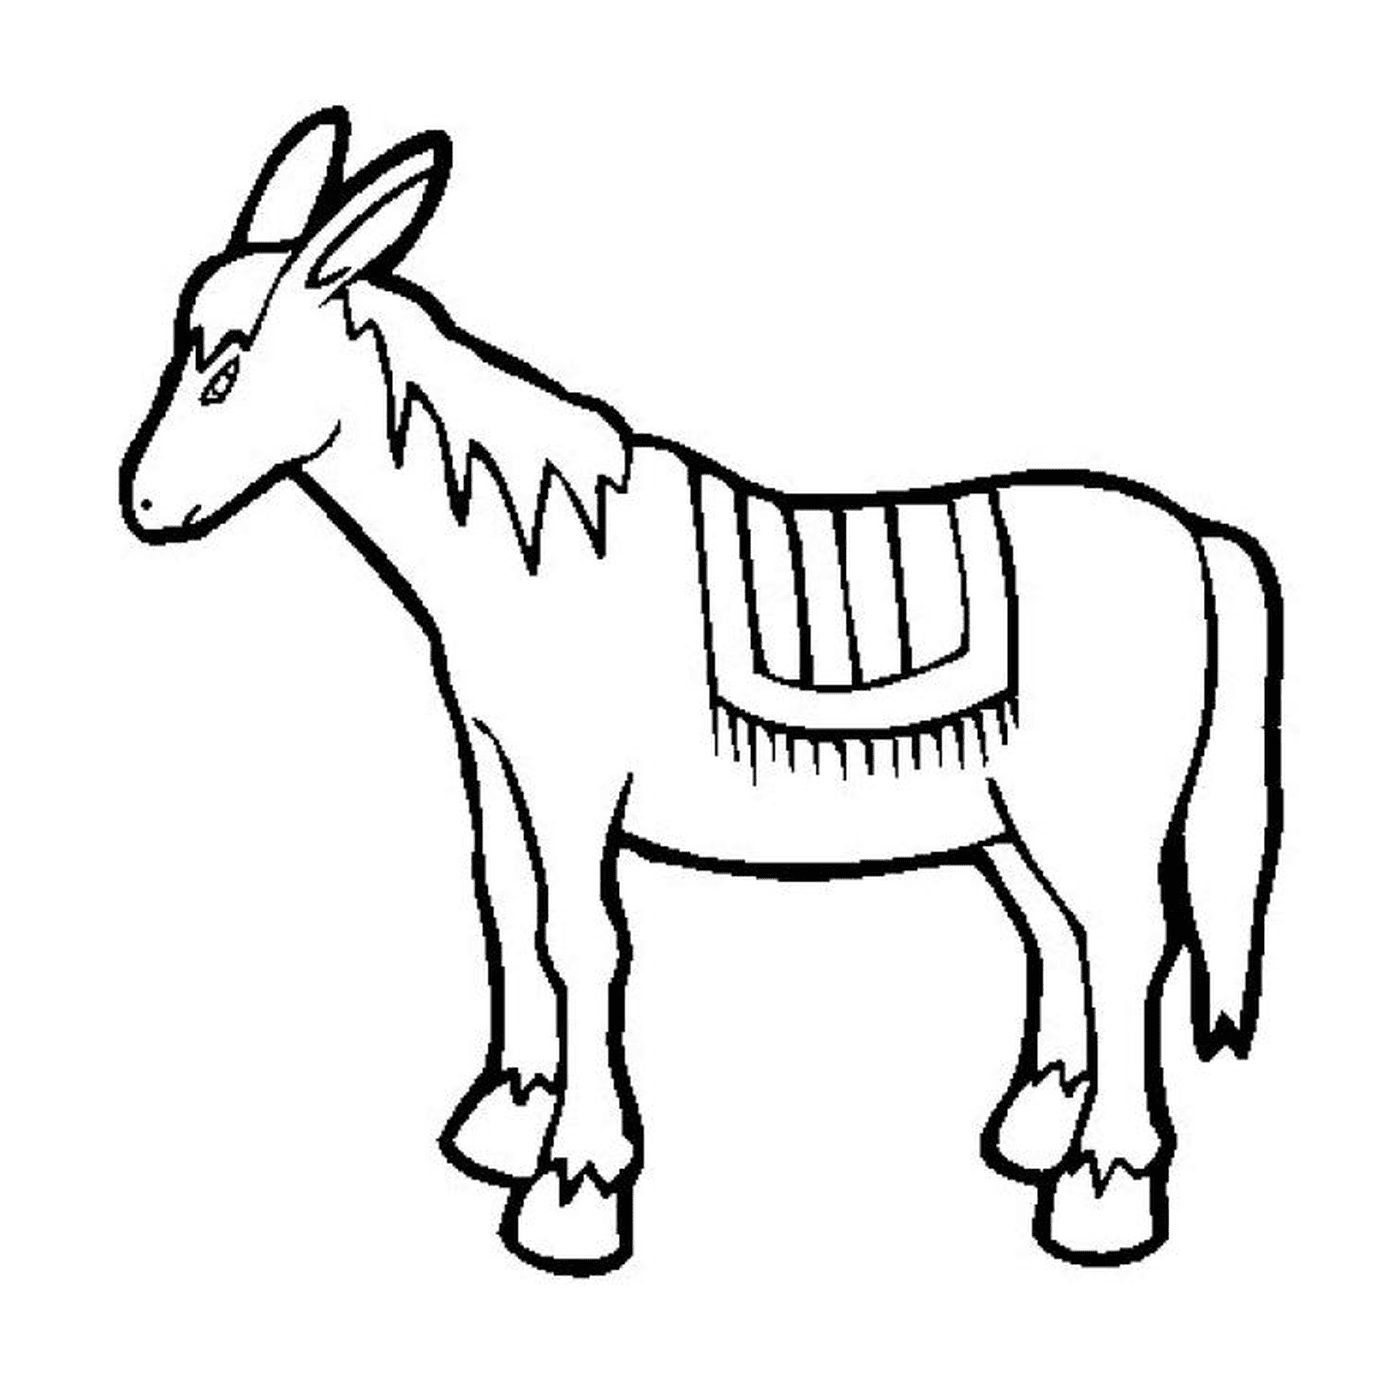  Una imagen de un animal dibujado 